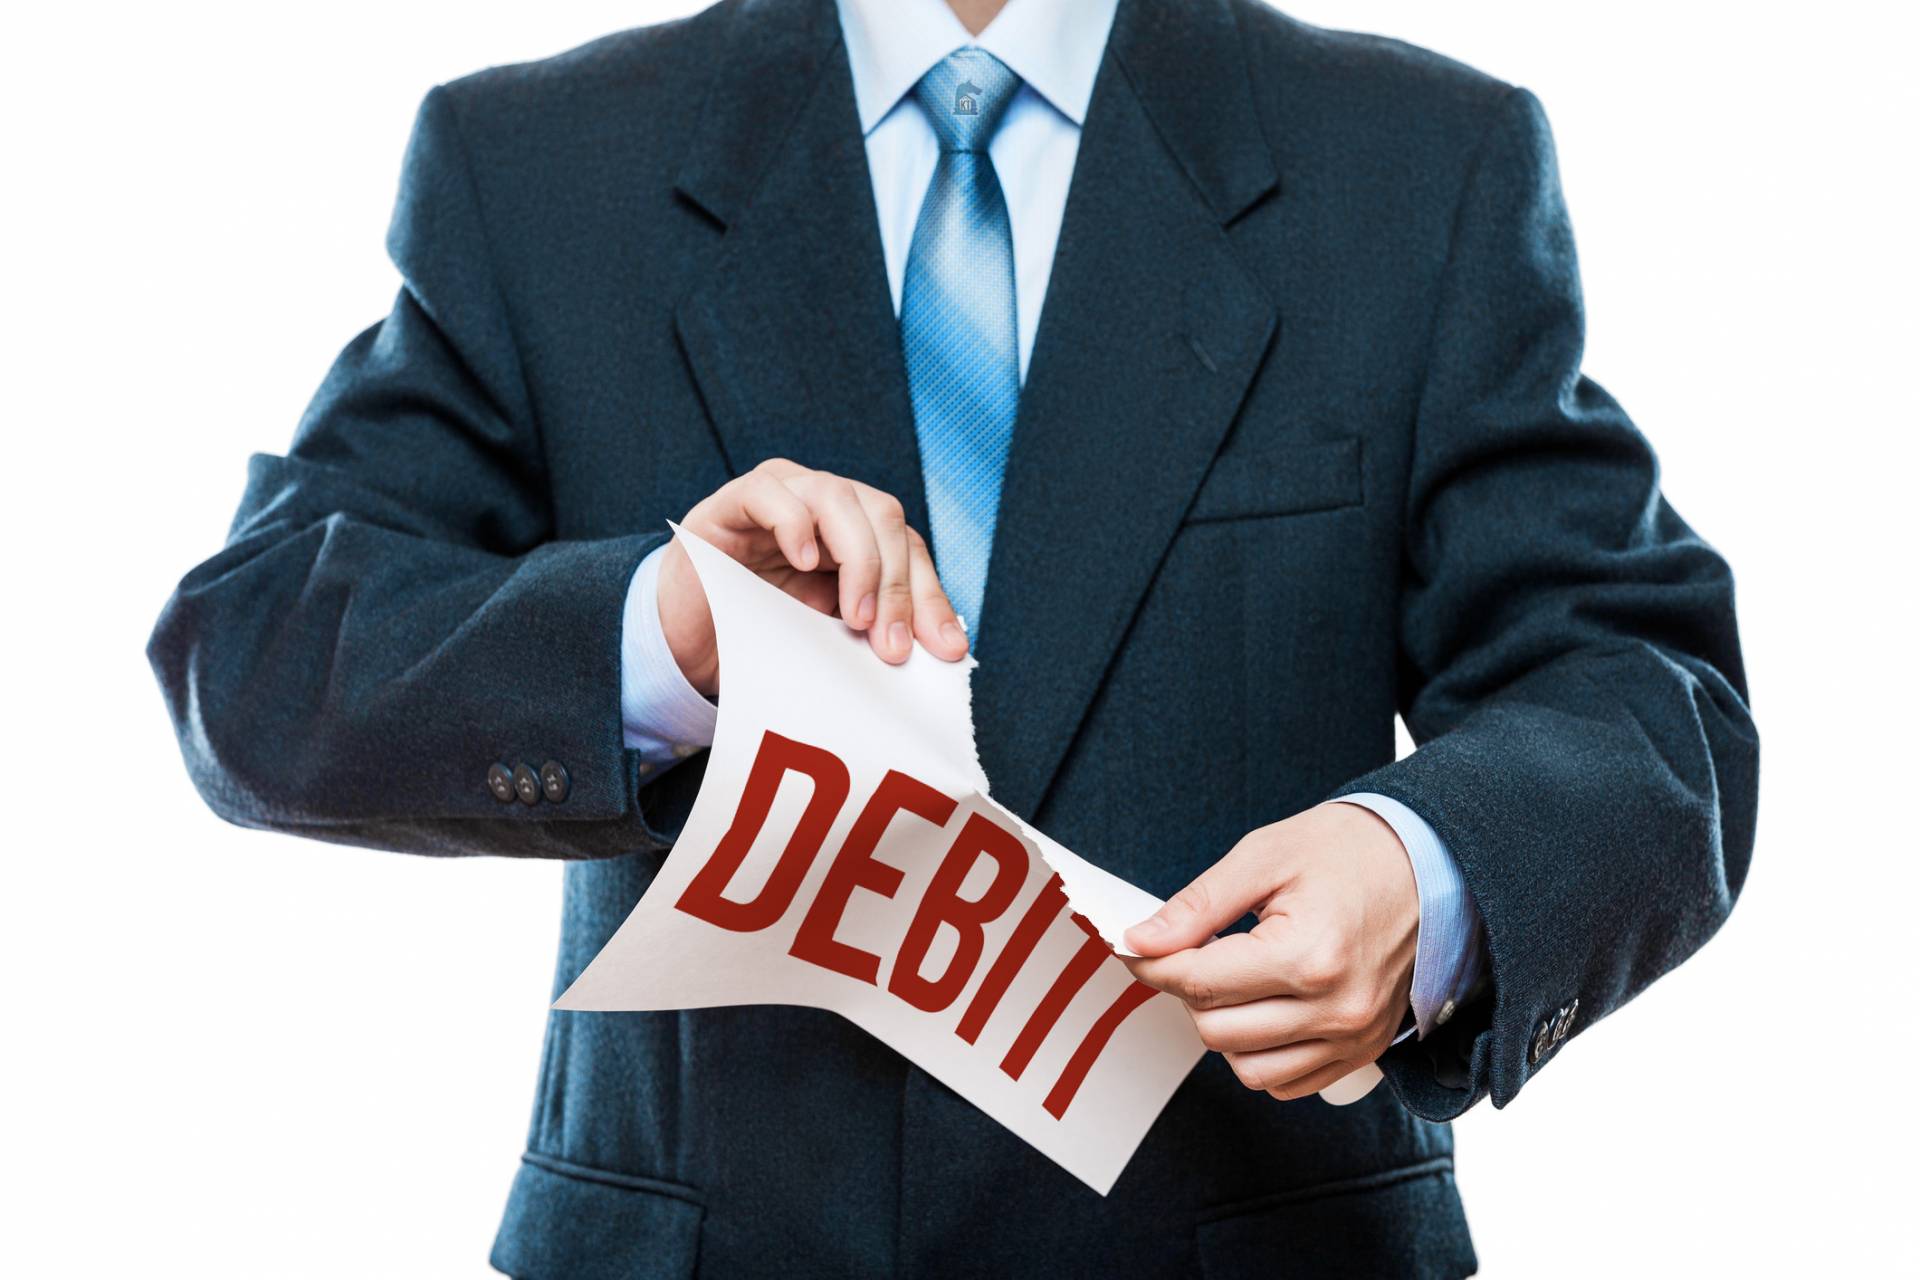 Debito stralciato al 80%: un altro successo per gli avvocati del sito "debiti addio"